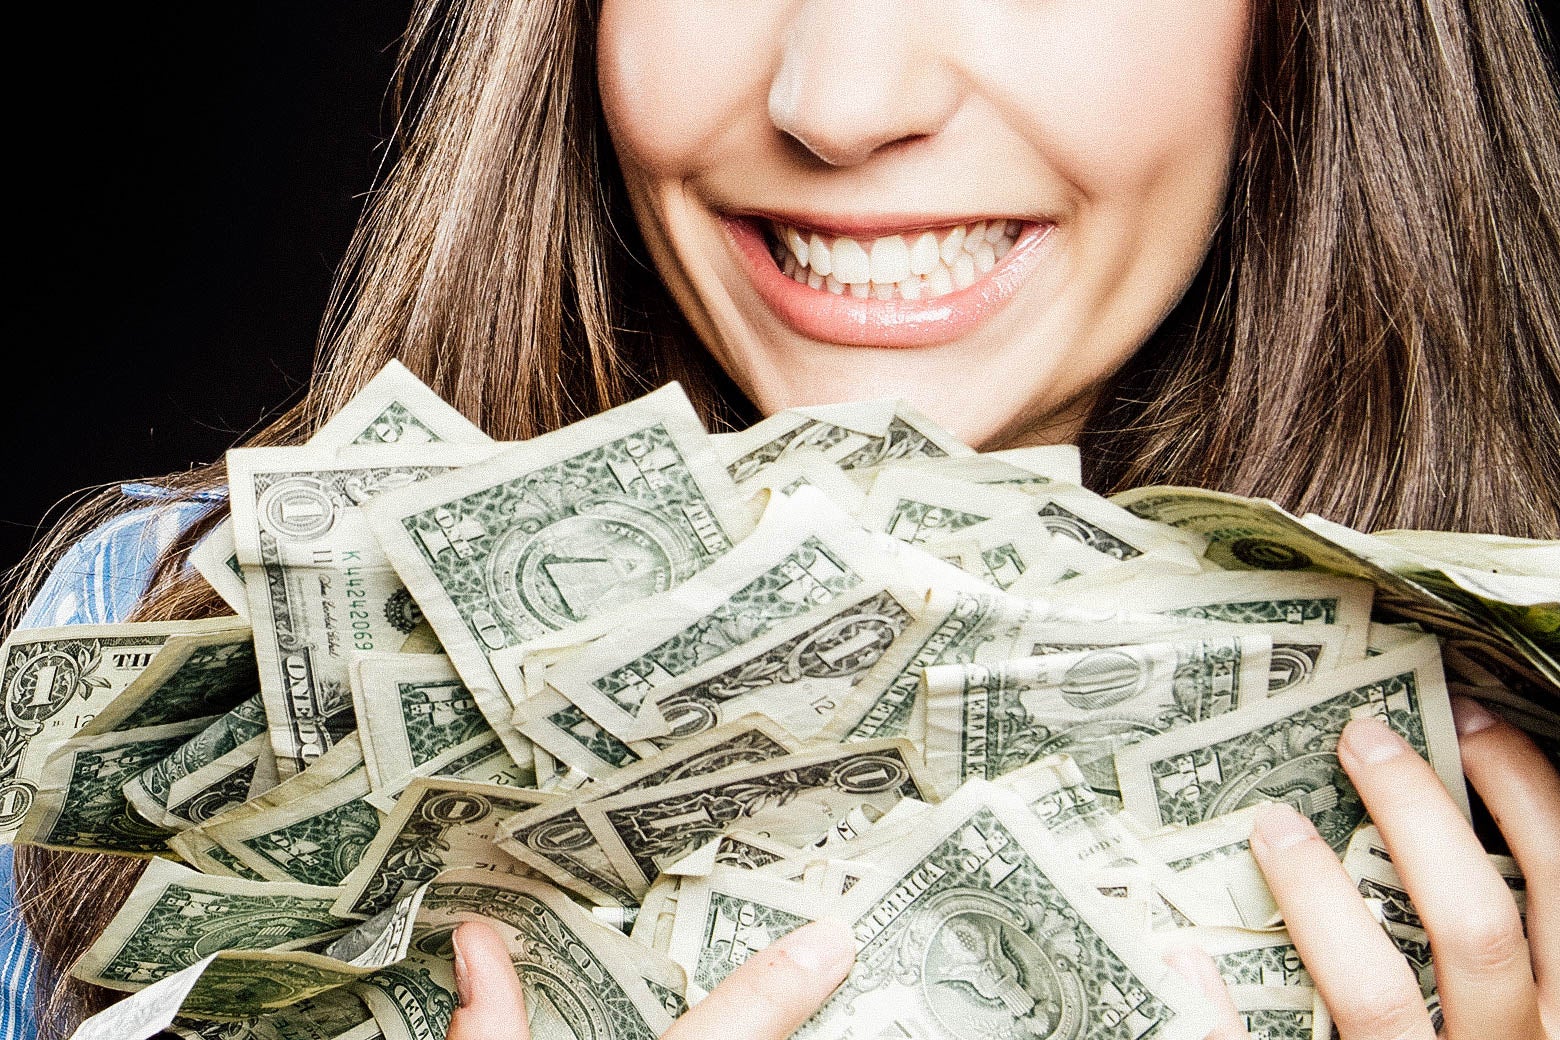 A woman cradles a large pile of cash.